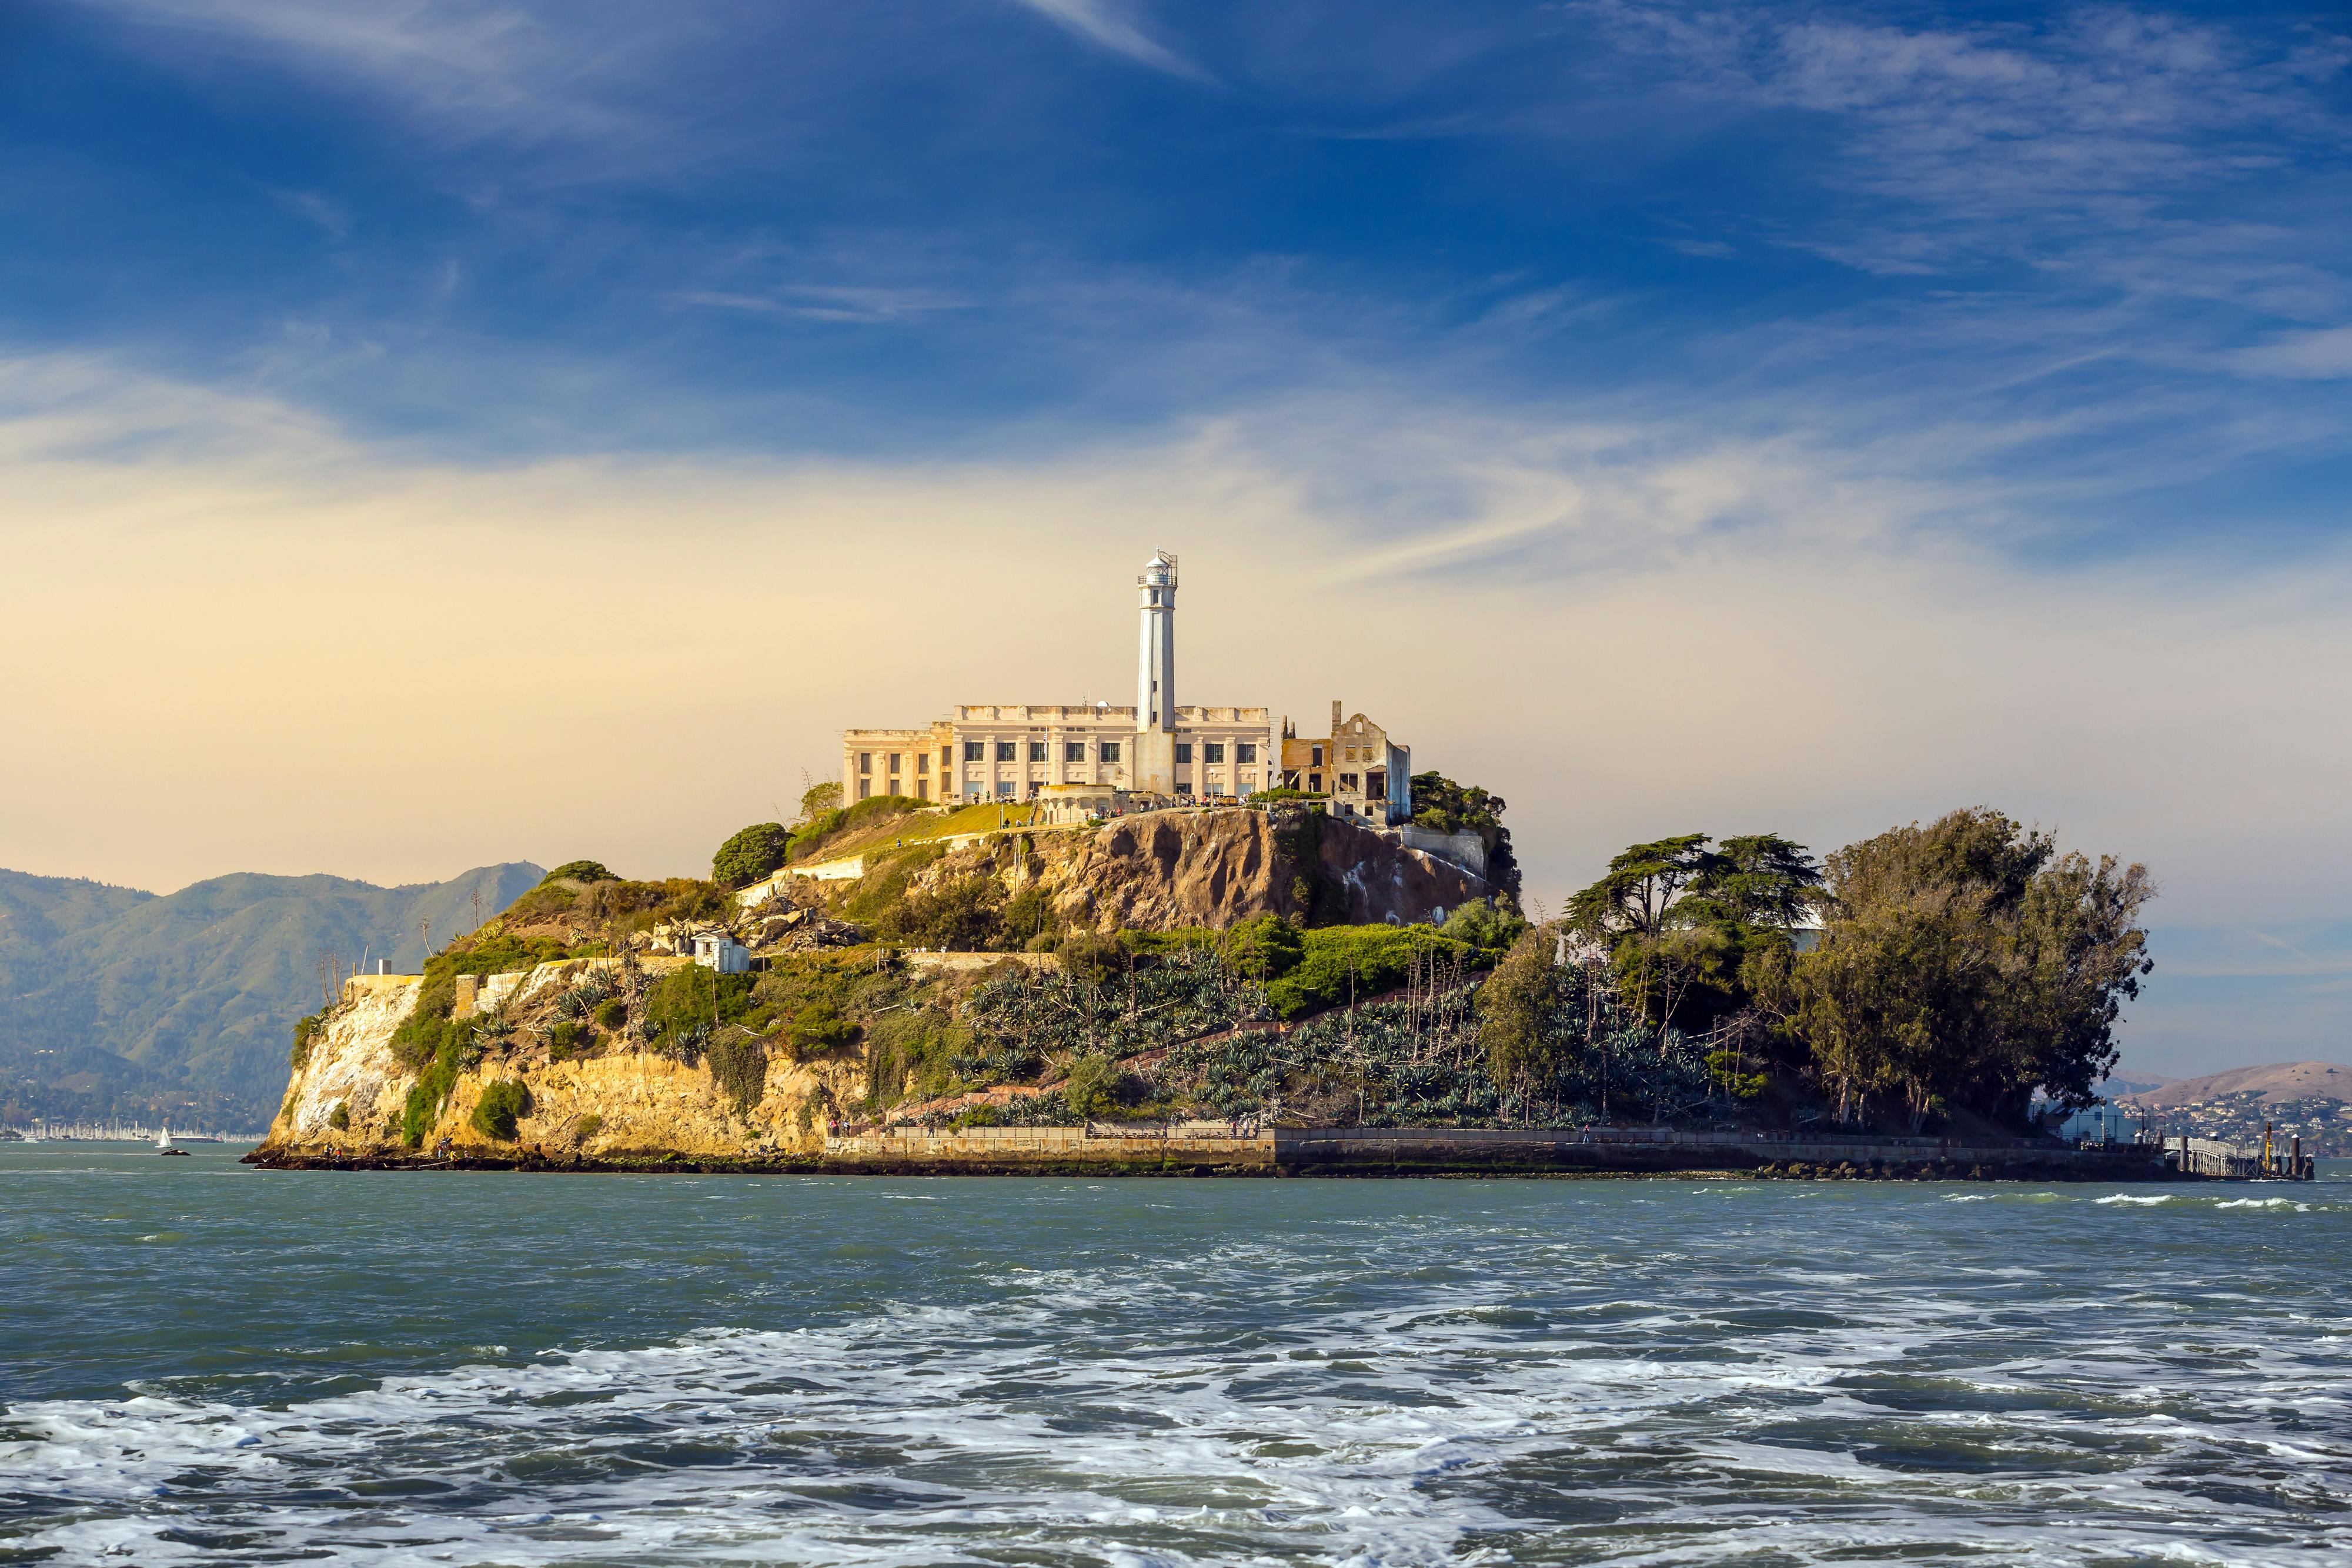 Bilhetes para Alcatraz com passe de 2 dias para ônibus hop-on hop-off de São Francisco